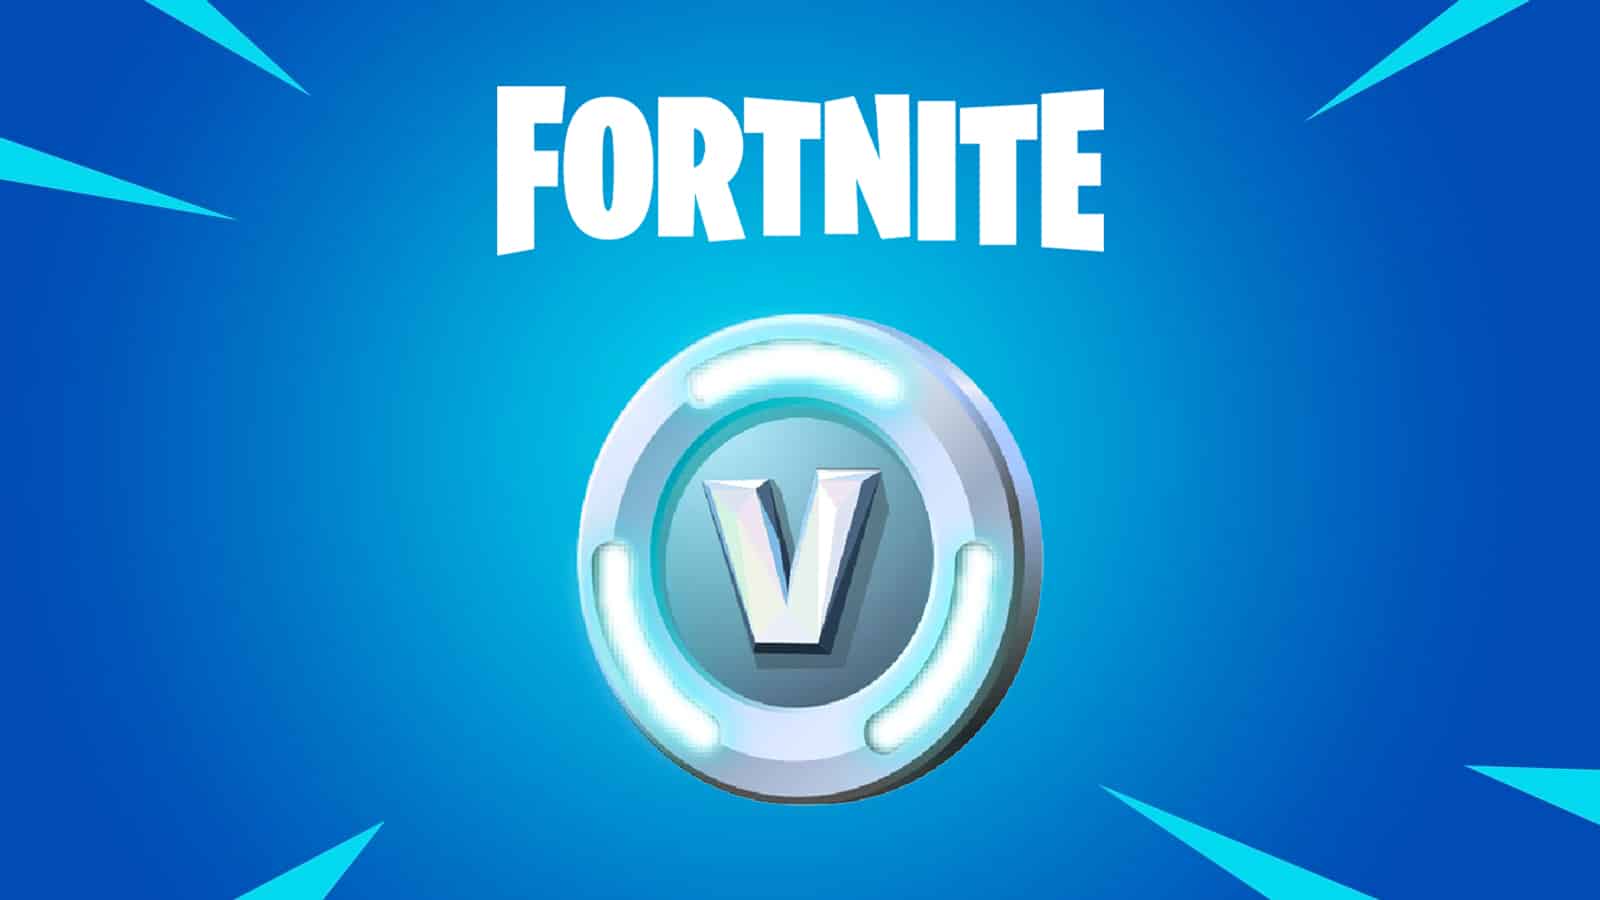 The V-Bucks logo in Fortnite